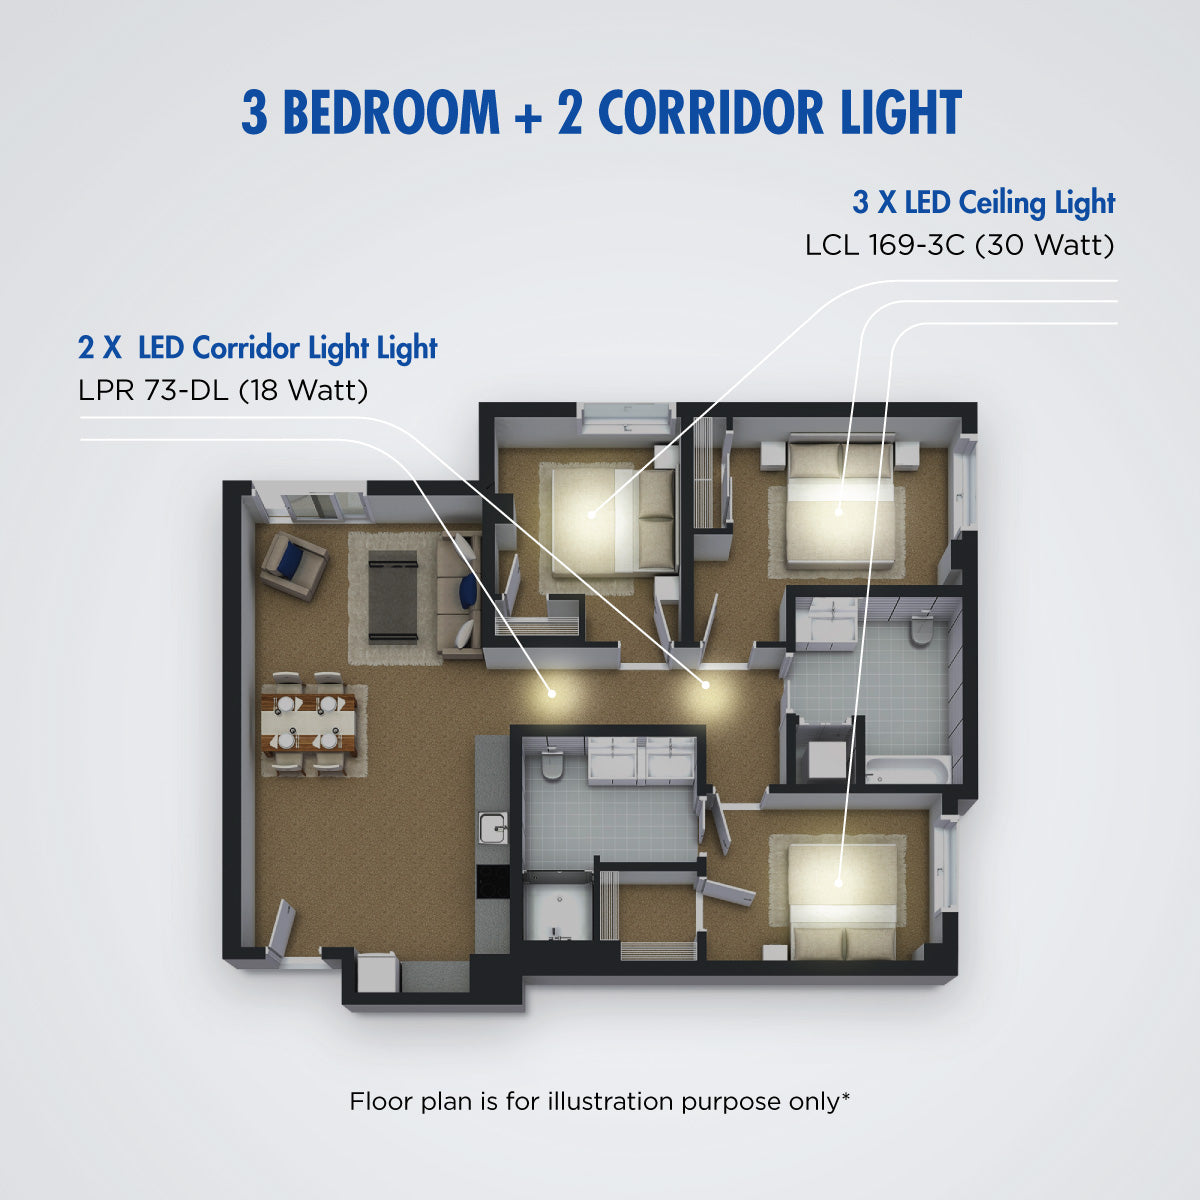 BTO Package 1 - 3 X LCL 169-3C + 2 X LPR 73-DL (3 Bedroom + 2 Corridor light)